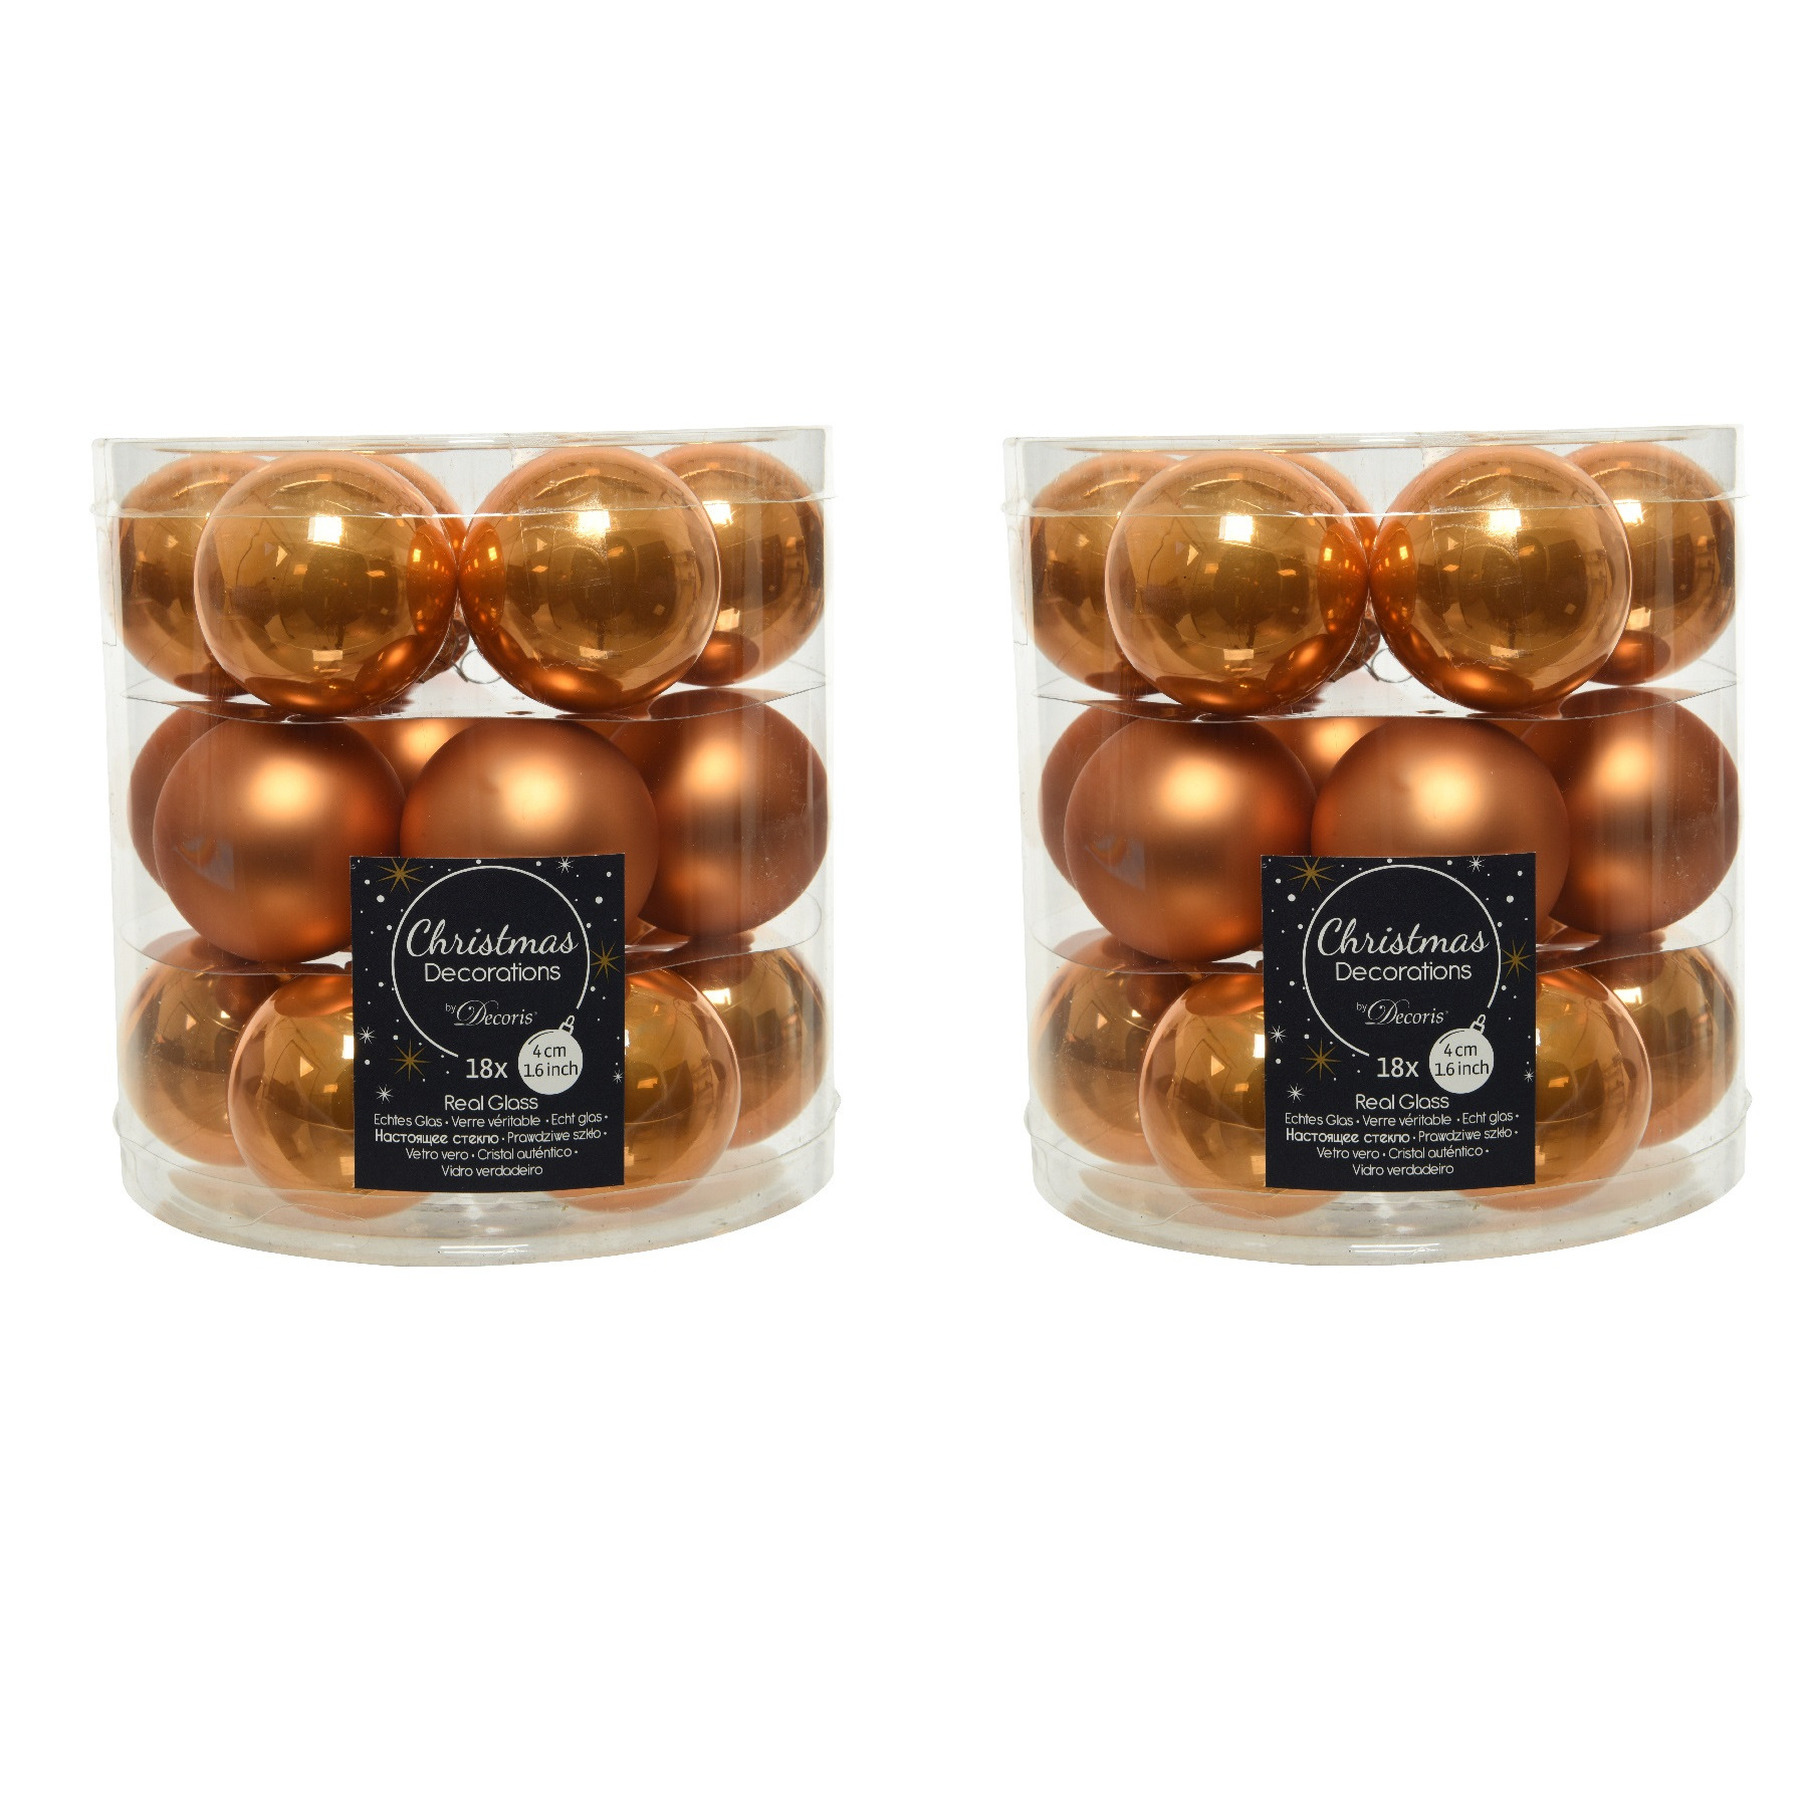 54x stuks kleine glazen kerstballen cognac bruin (amber) 4 cm mat-glans